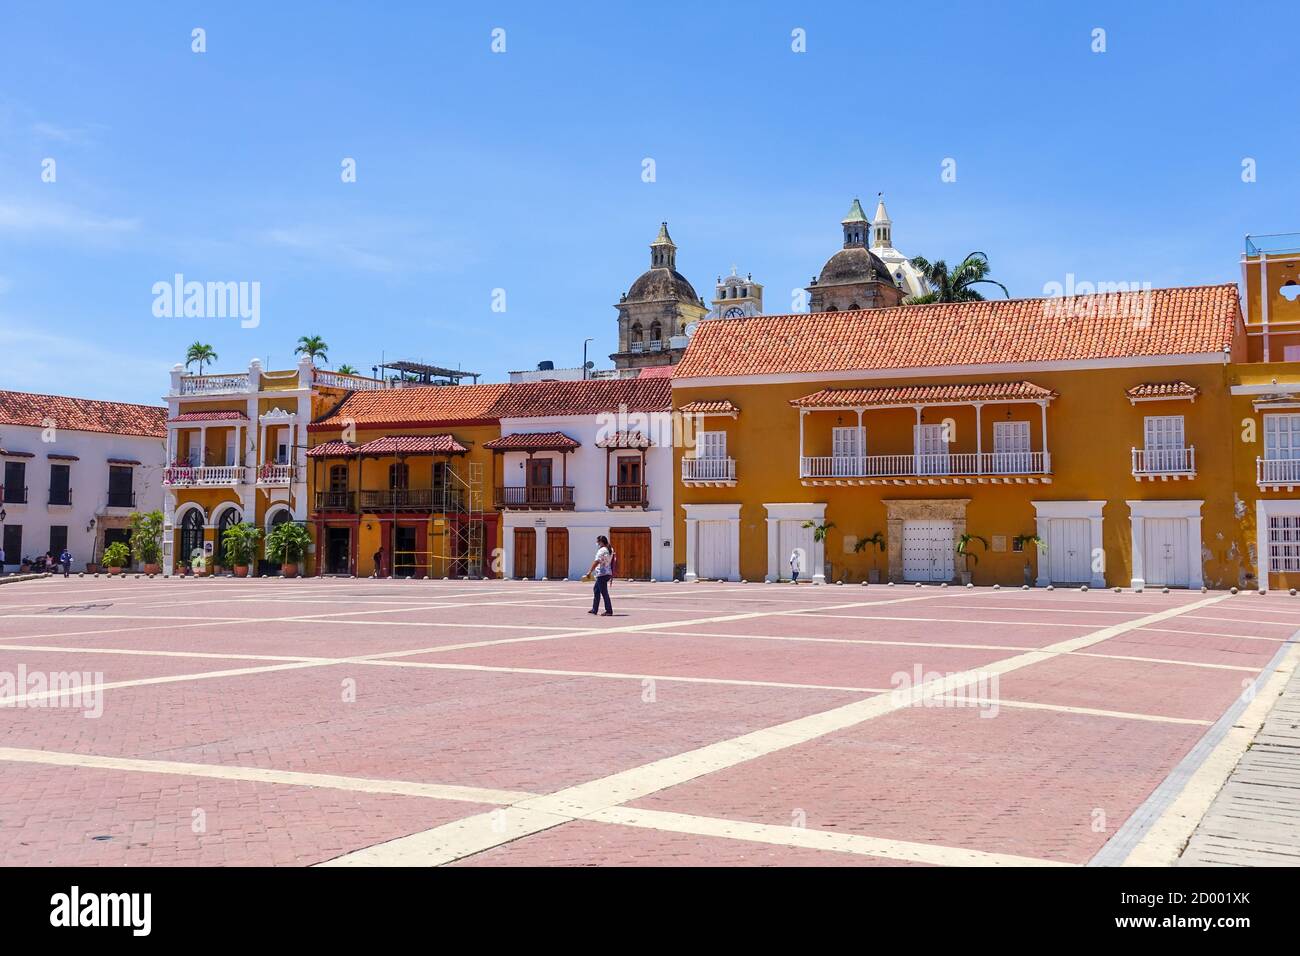 La Plaza de la Aduana se vide pendant le confinement de la pandémie Covid-19 à Cartagena, en Colombie. Banque D'Images